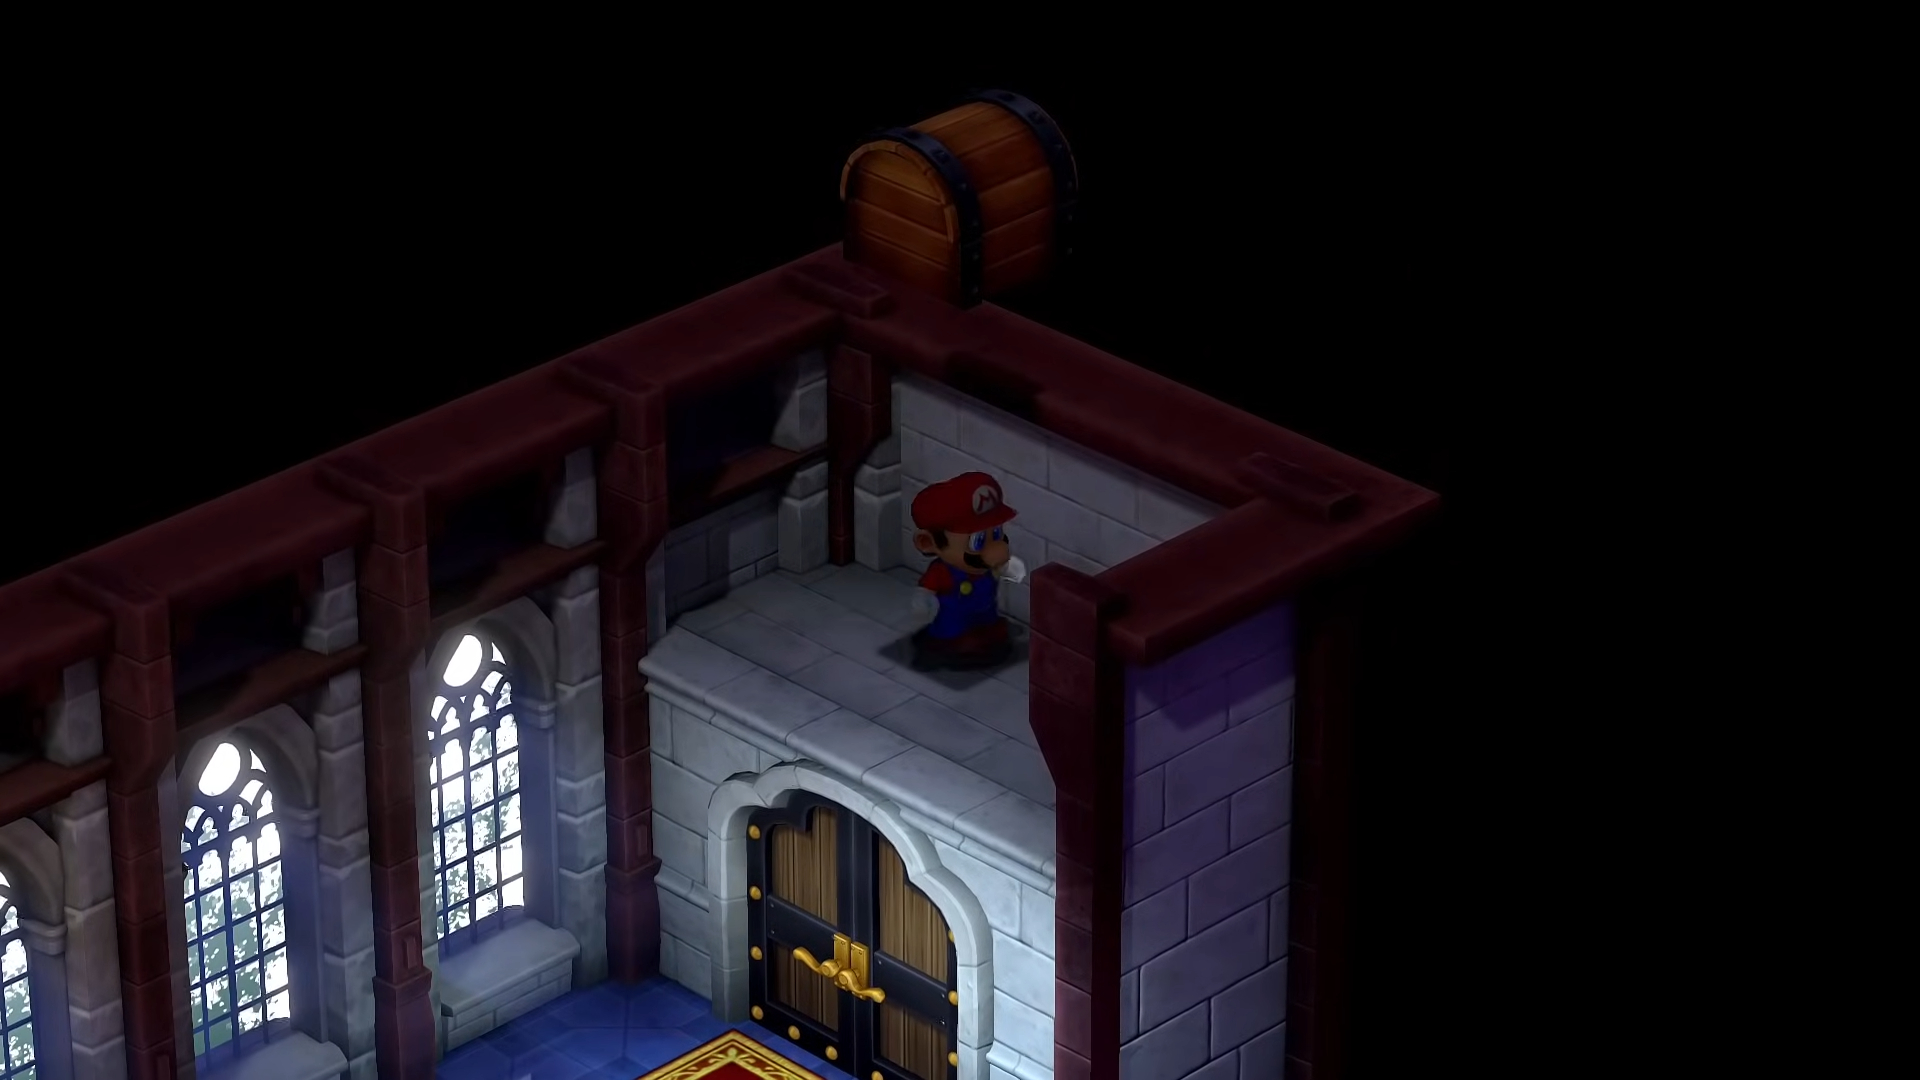 Mario above a door in a castle.